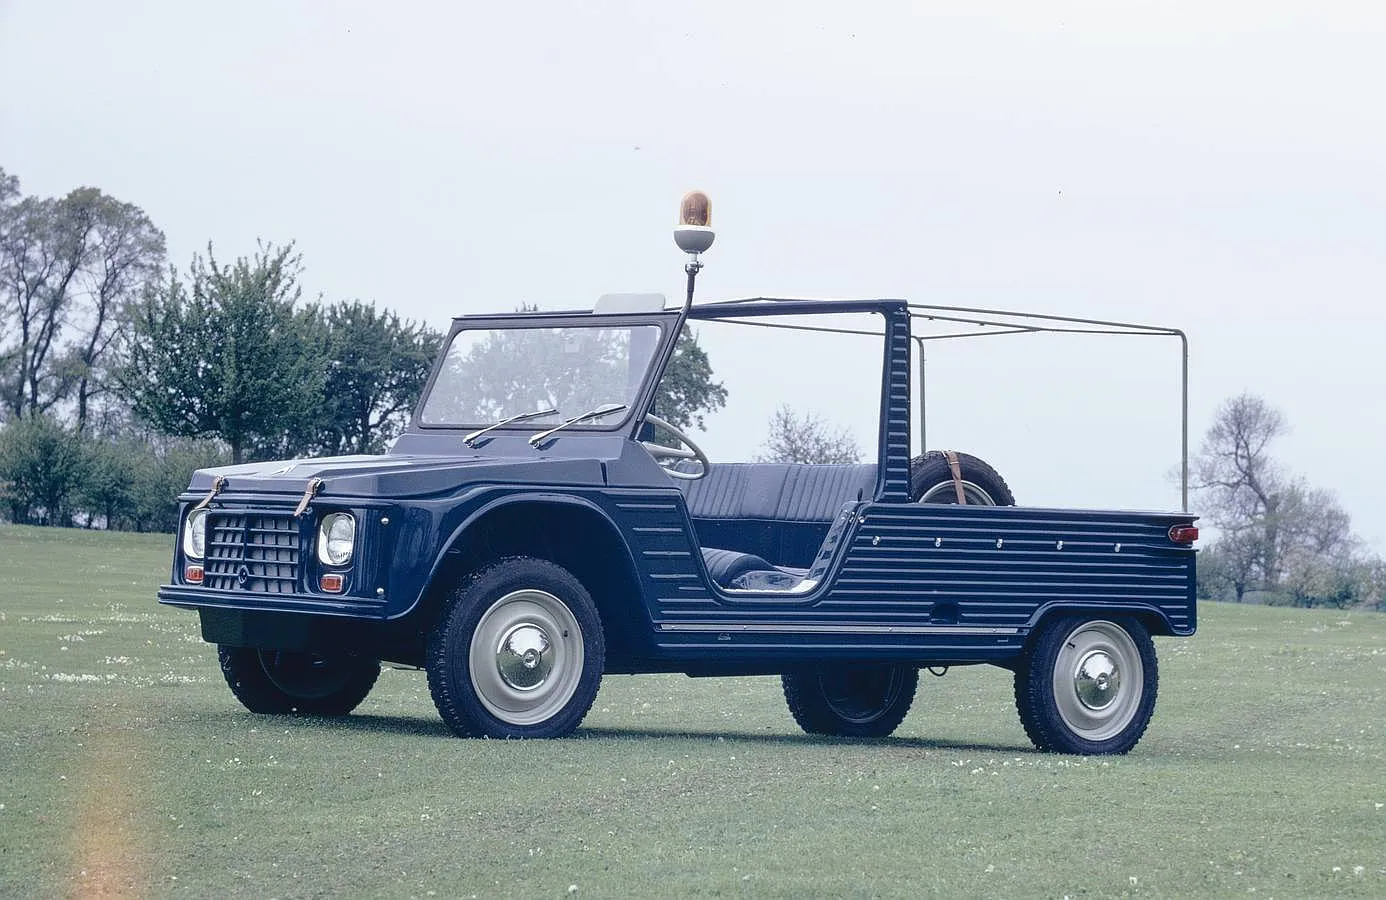 Polivalente, práctico y económico, el Citroën Méhari contó con esta versión policial 